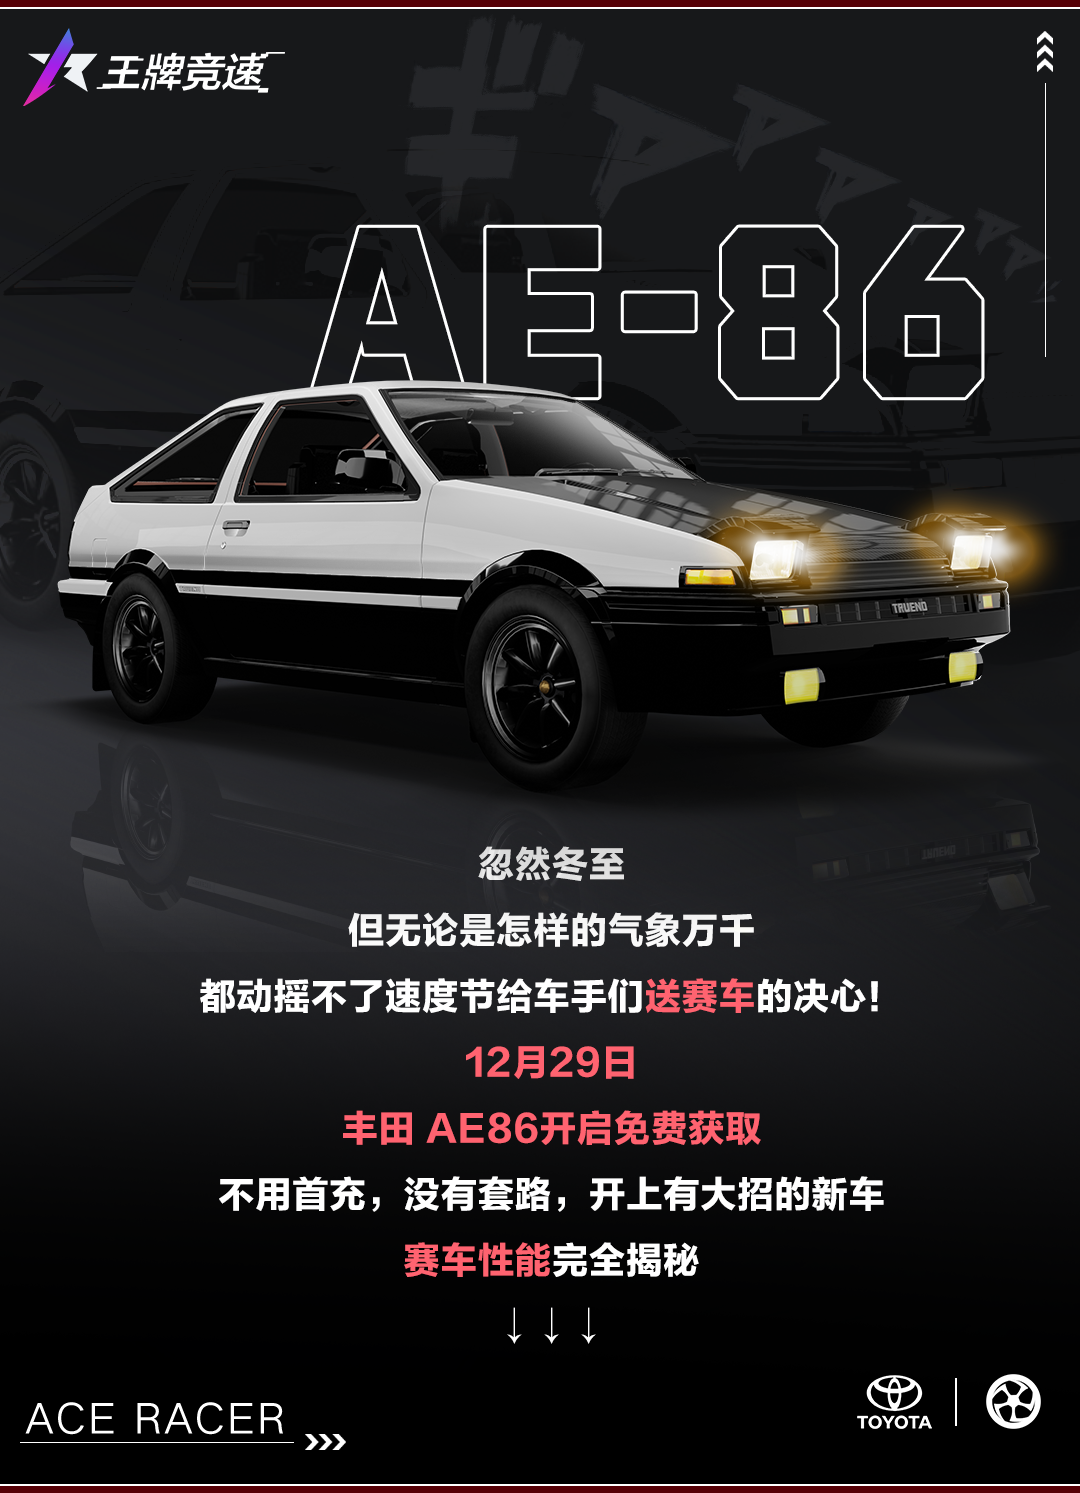 不给各位添麻烦：赛车游戏理性消费，从免费送“AE86”做起！